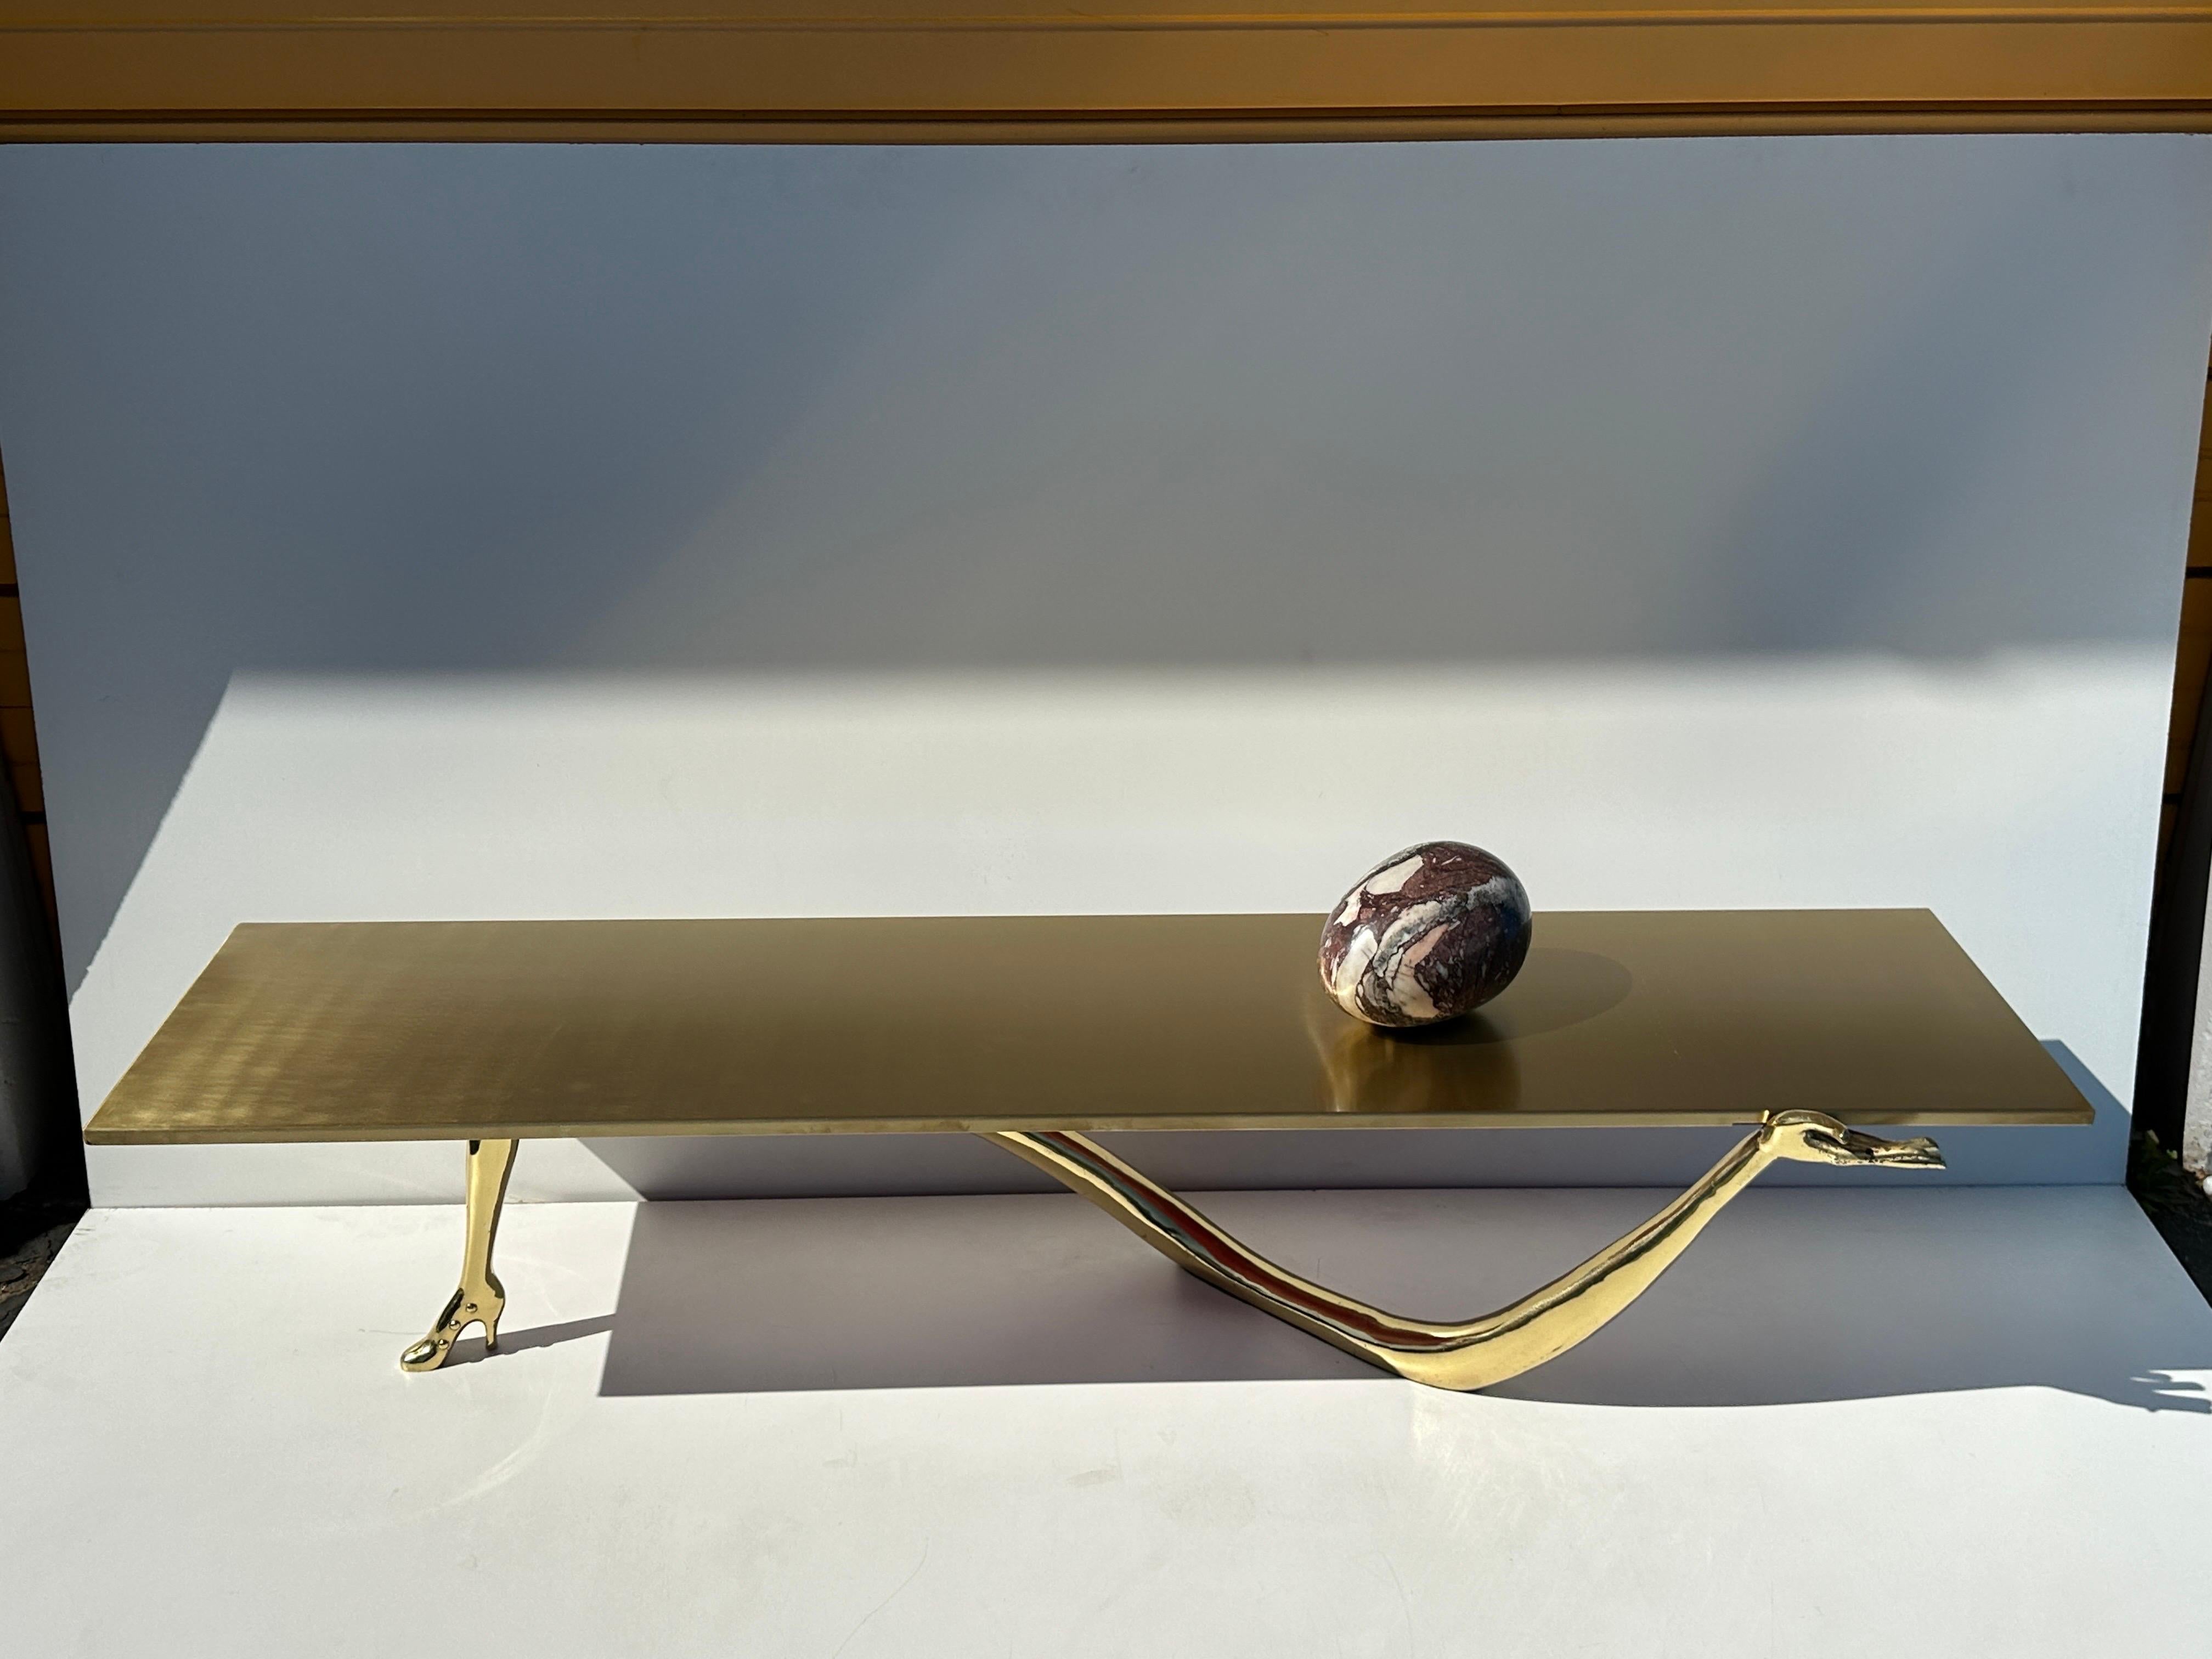 LEDA Couchtisch aus Messing von Salvador Dali. Schönes Beispiel für Dalis surrealistische Hand- und Absatzskulptur, die eine Tischplatte aus gebürstetem Messing mit einem Marmor-Ei hält. Ursprünglich 1935 entworfen, in den 2000er Jahren von B. D.